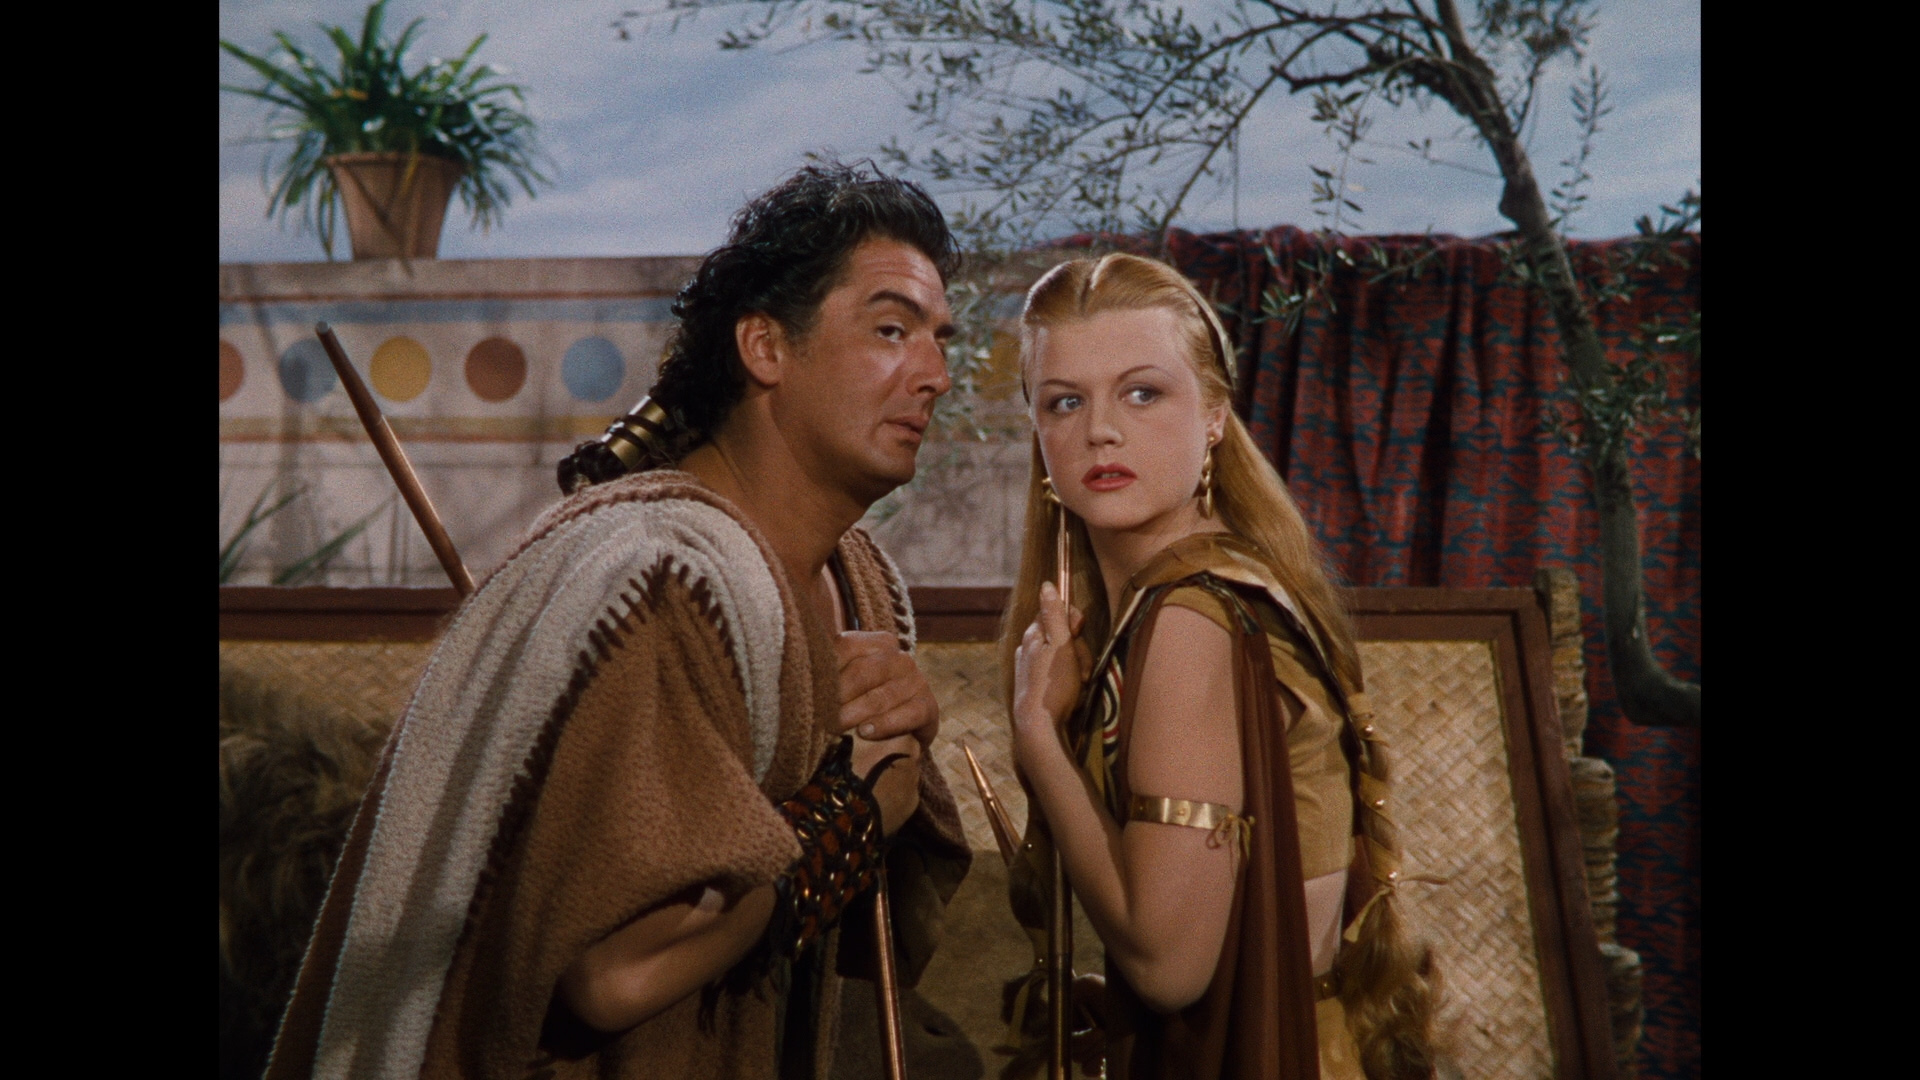 Samson And Delilah 1949 Full Movie 16